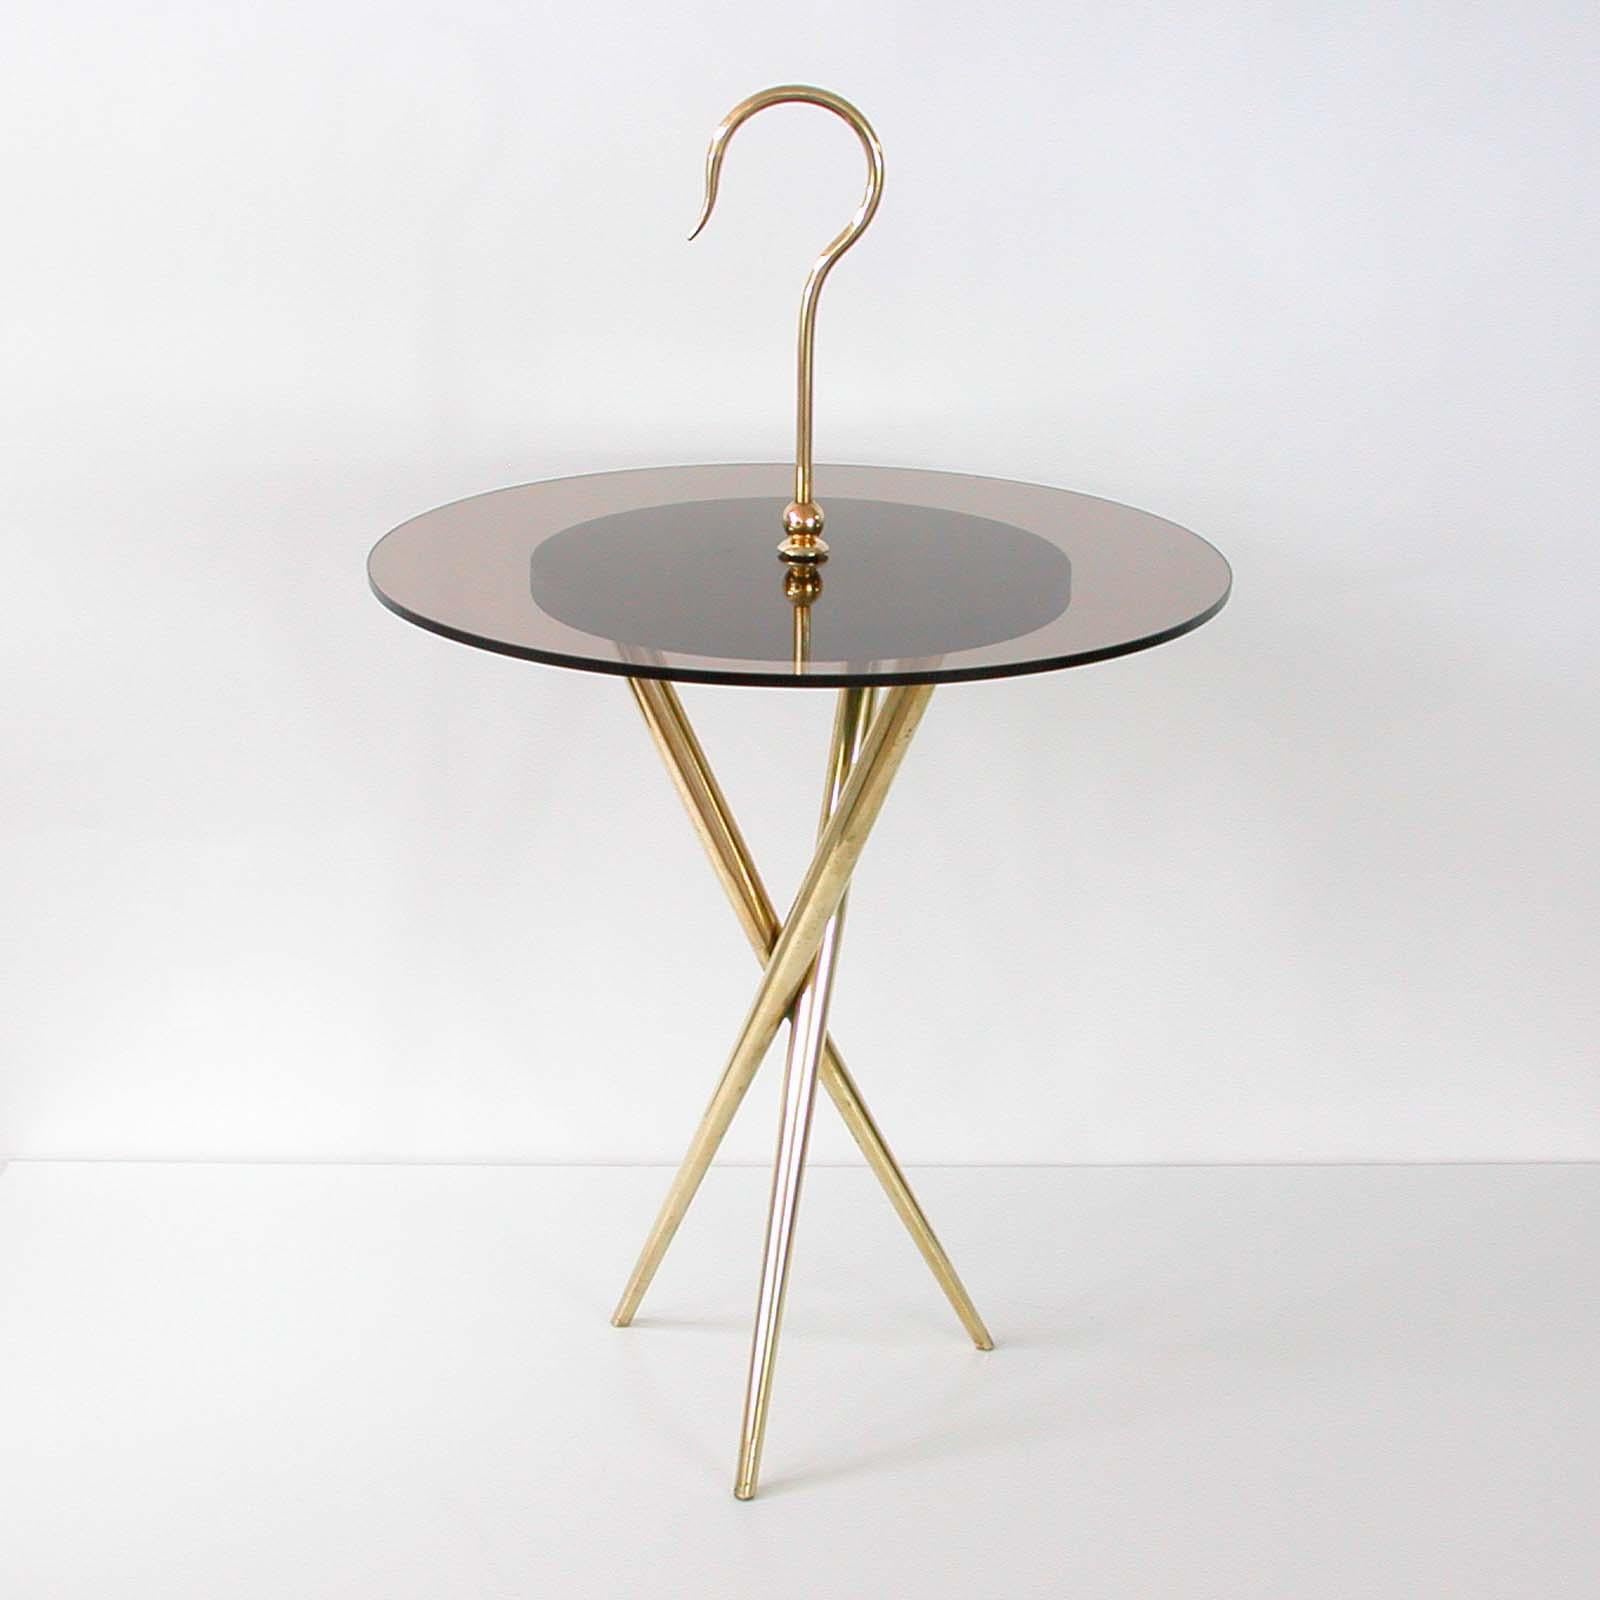 Cette table d'appoint ronde à trépied a été fabriquée en Italie dans les années 1950 à la manière d'Ico Parisi. Il a une base en laiton, un plateau en verre teinté bronze (fumé) et une poignée et des détails en laiton. La hauteur totale avec la